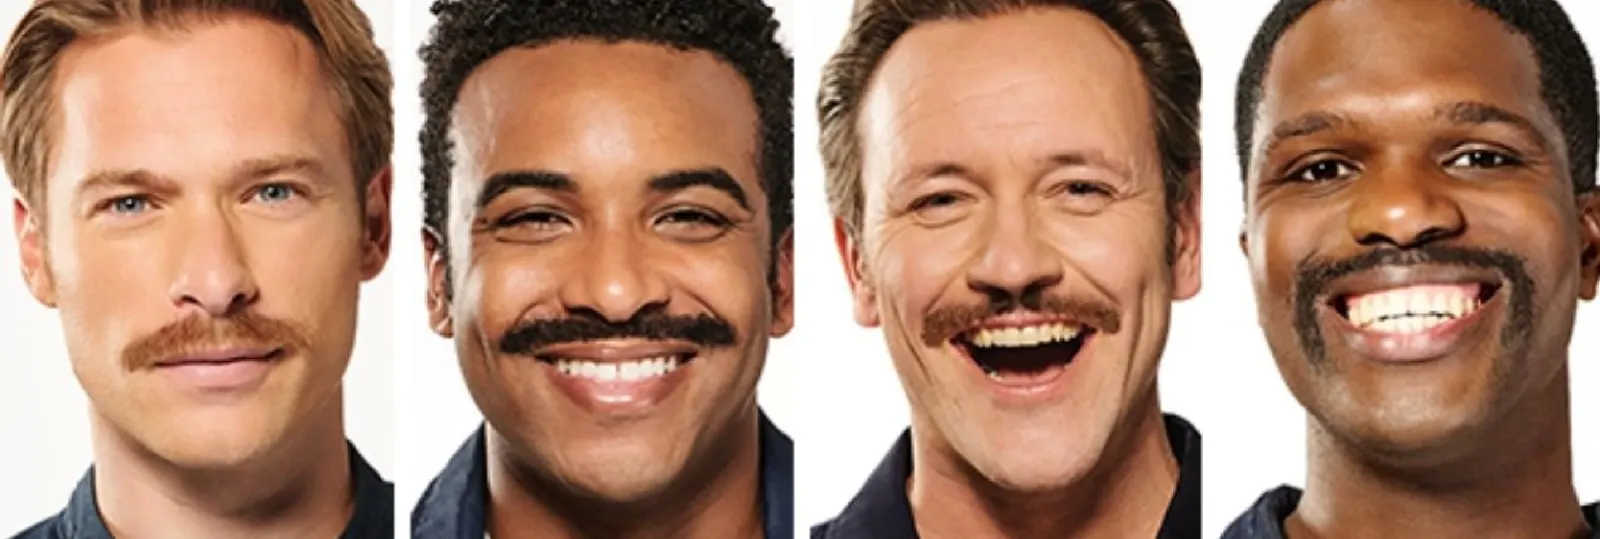 Gillette ist neuer Partner der Movember‐Stiftung